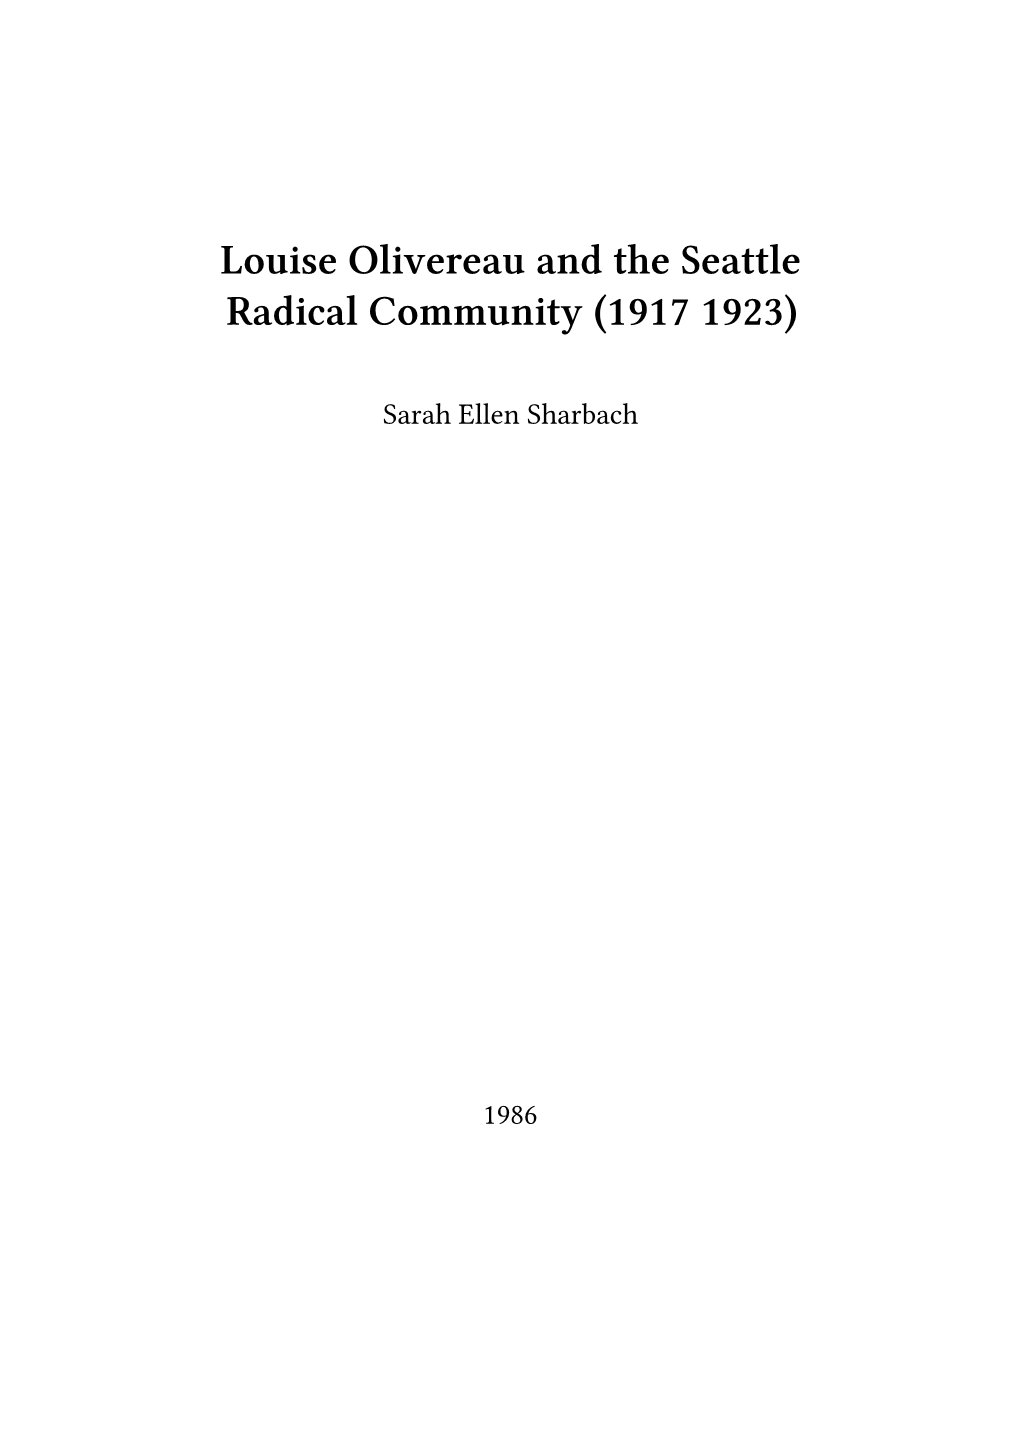 Louise Olivereau and the Seattle Radical Community (1917 1923)